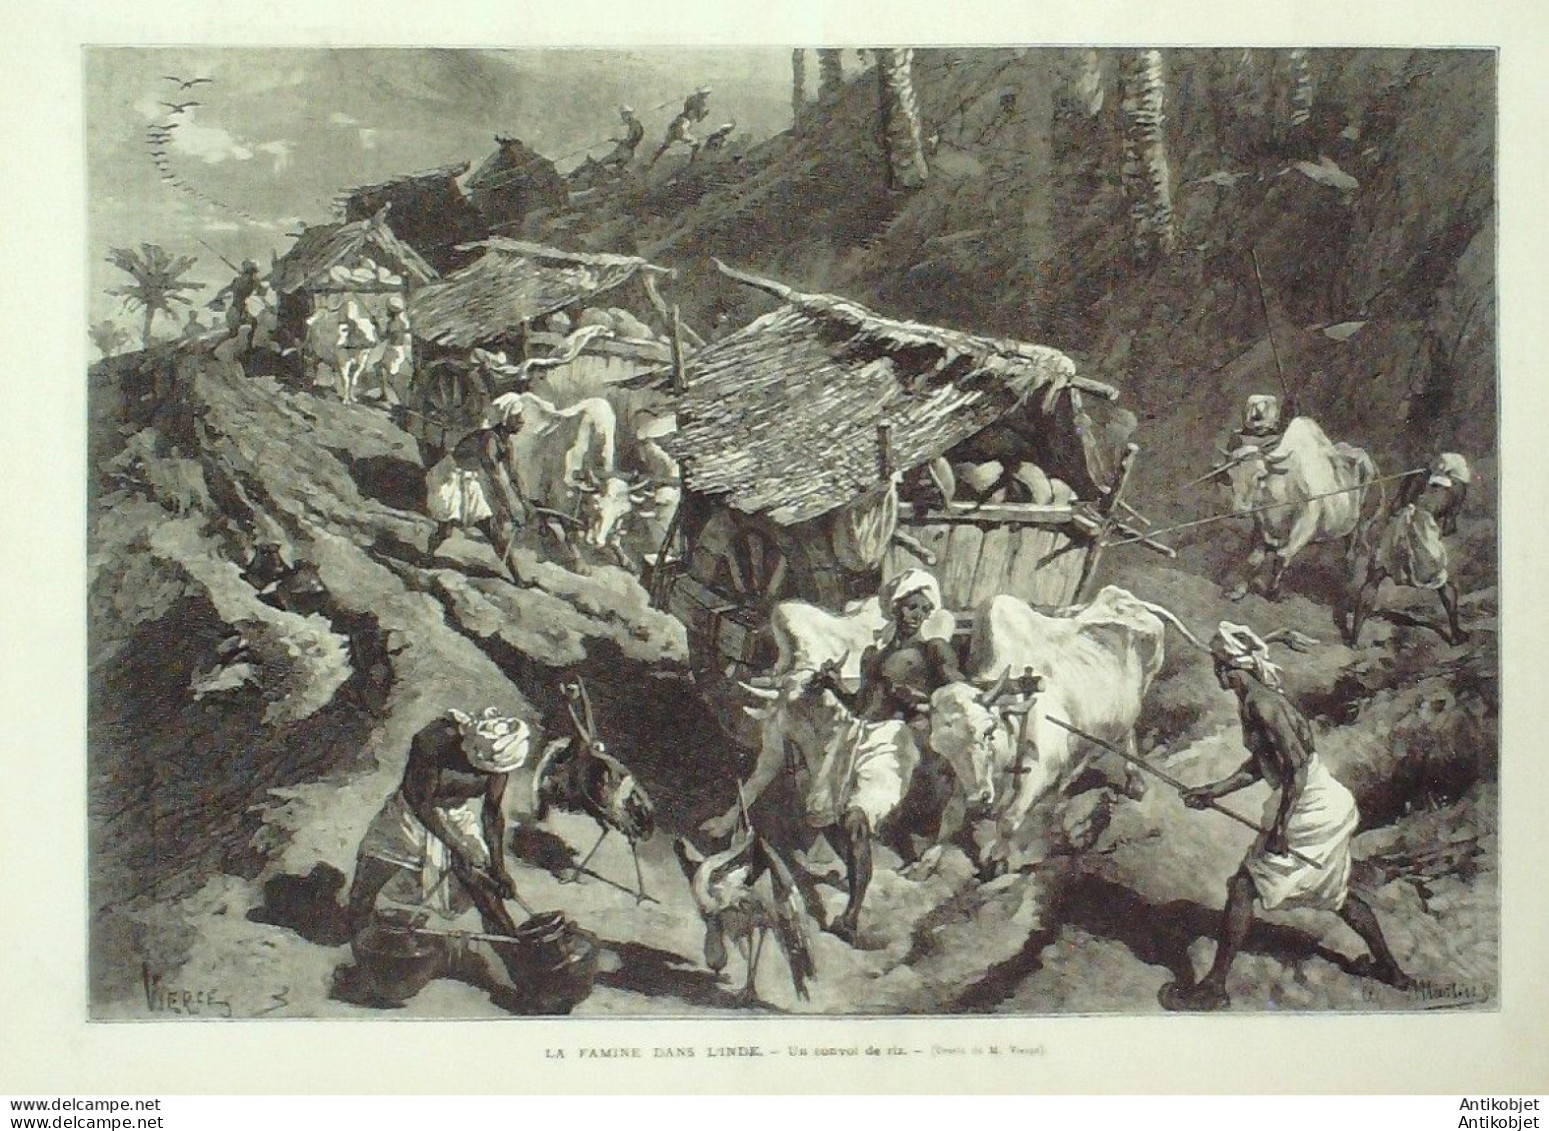 Le Monde Illustré 1874 N°898 Douarnenez (29) Fontainebleau (77) Incendie Lille (59) Belgique Gand - 1850 - 1899